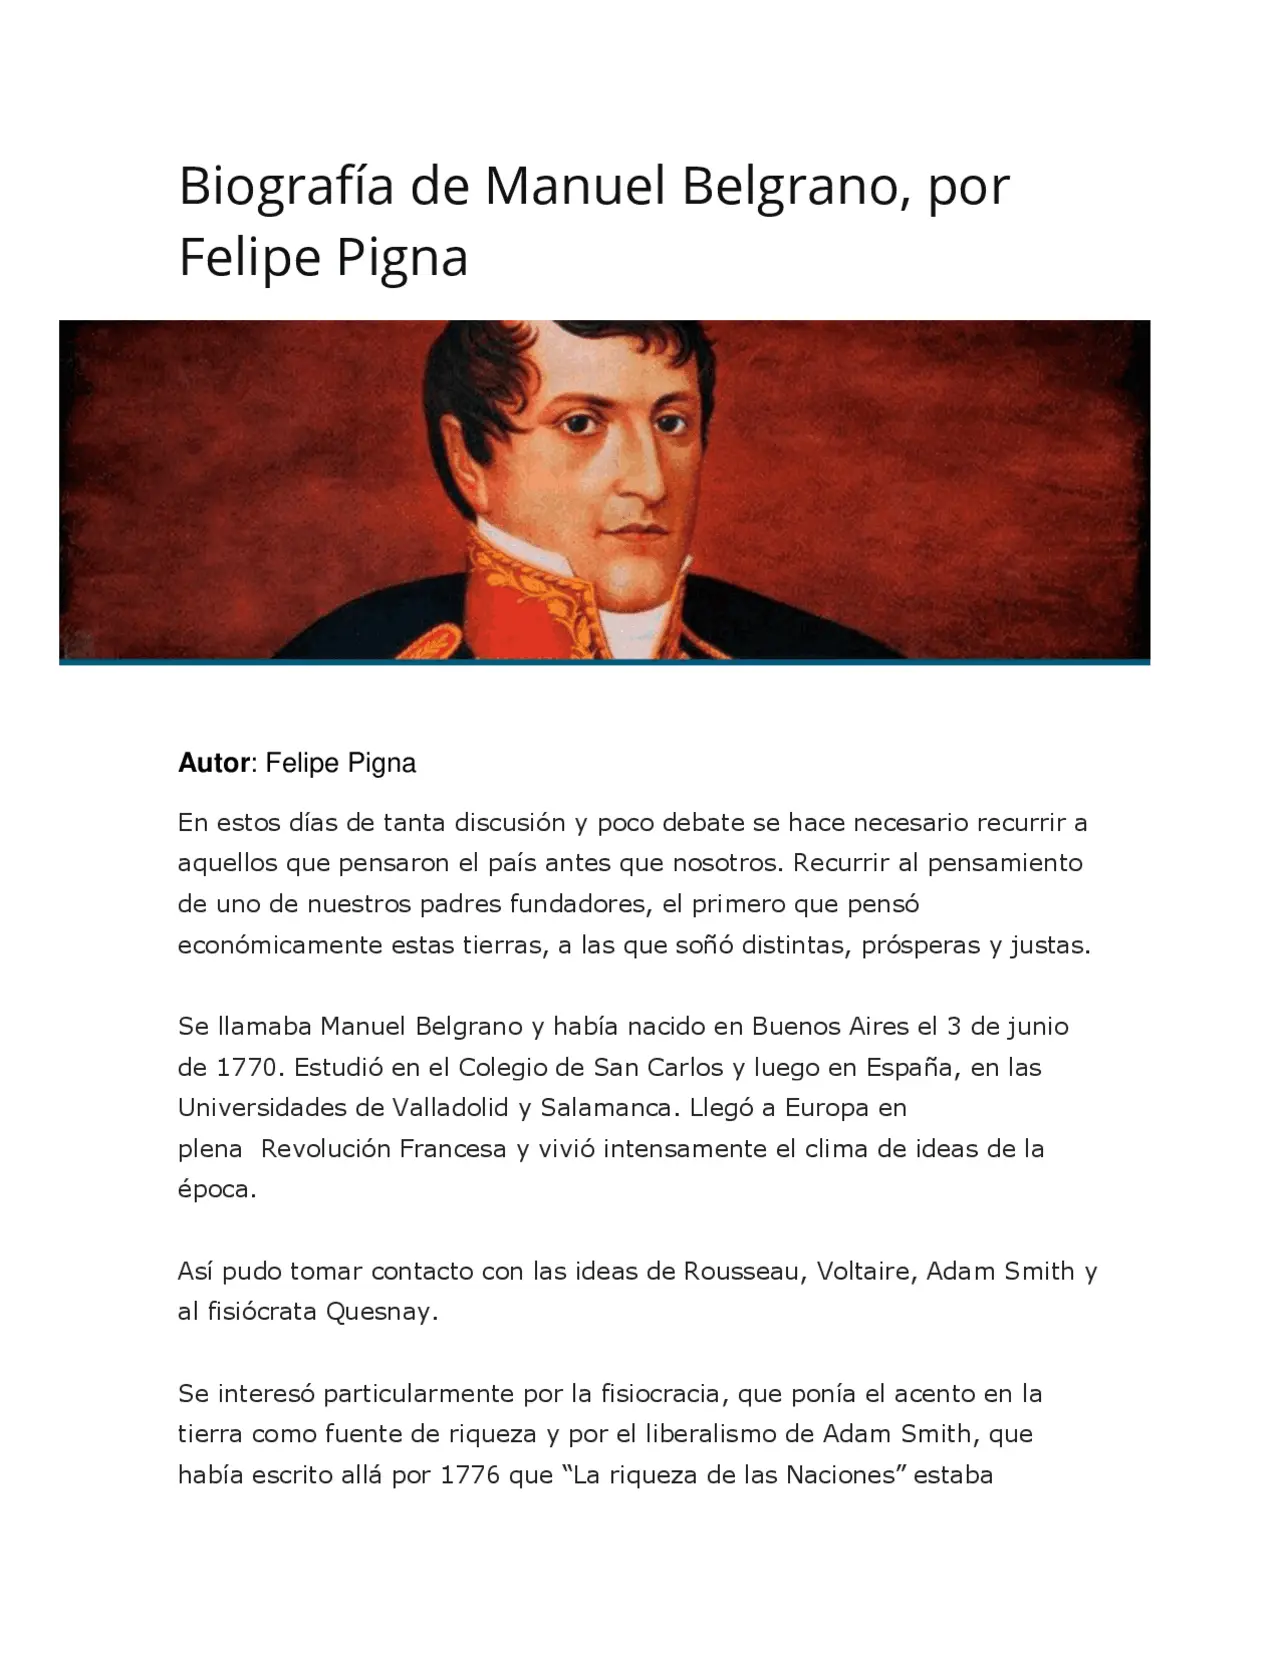 biografia de belgrano resumen - Qué hizo Belgrano por nuestra historia